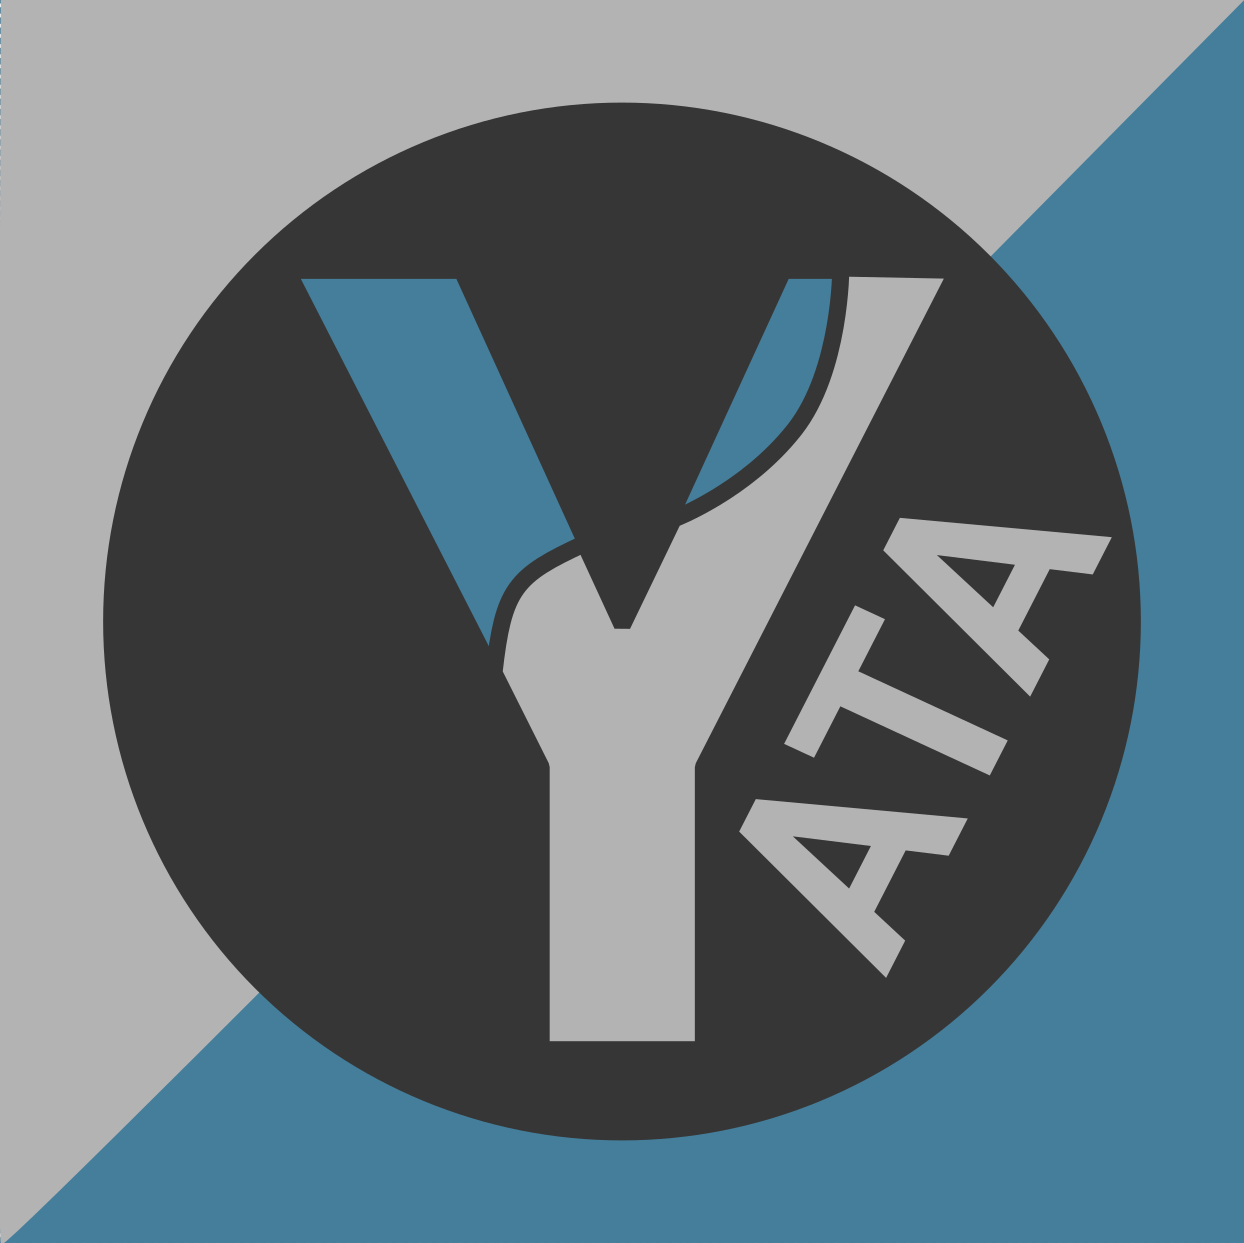 Yata logo